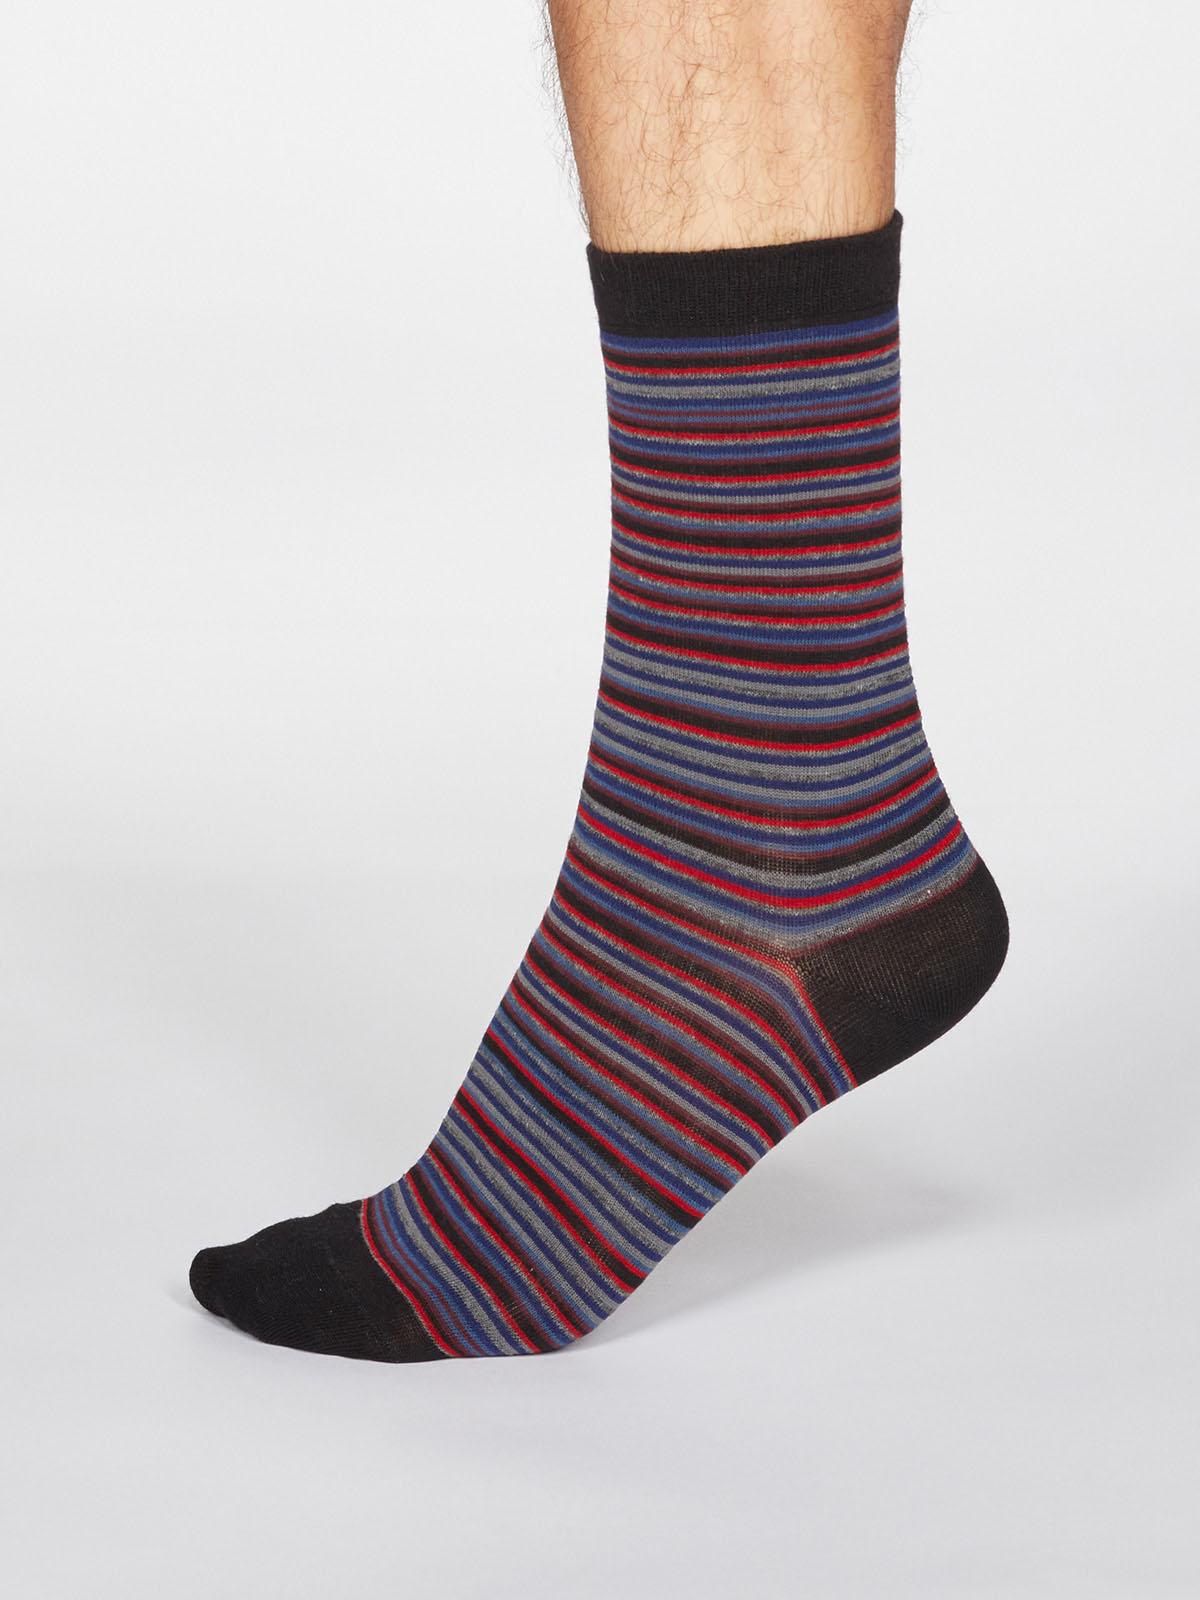 Jacob Stripe Socks - Black - Thought Clothing UK